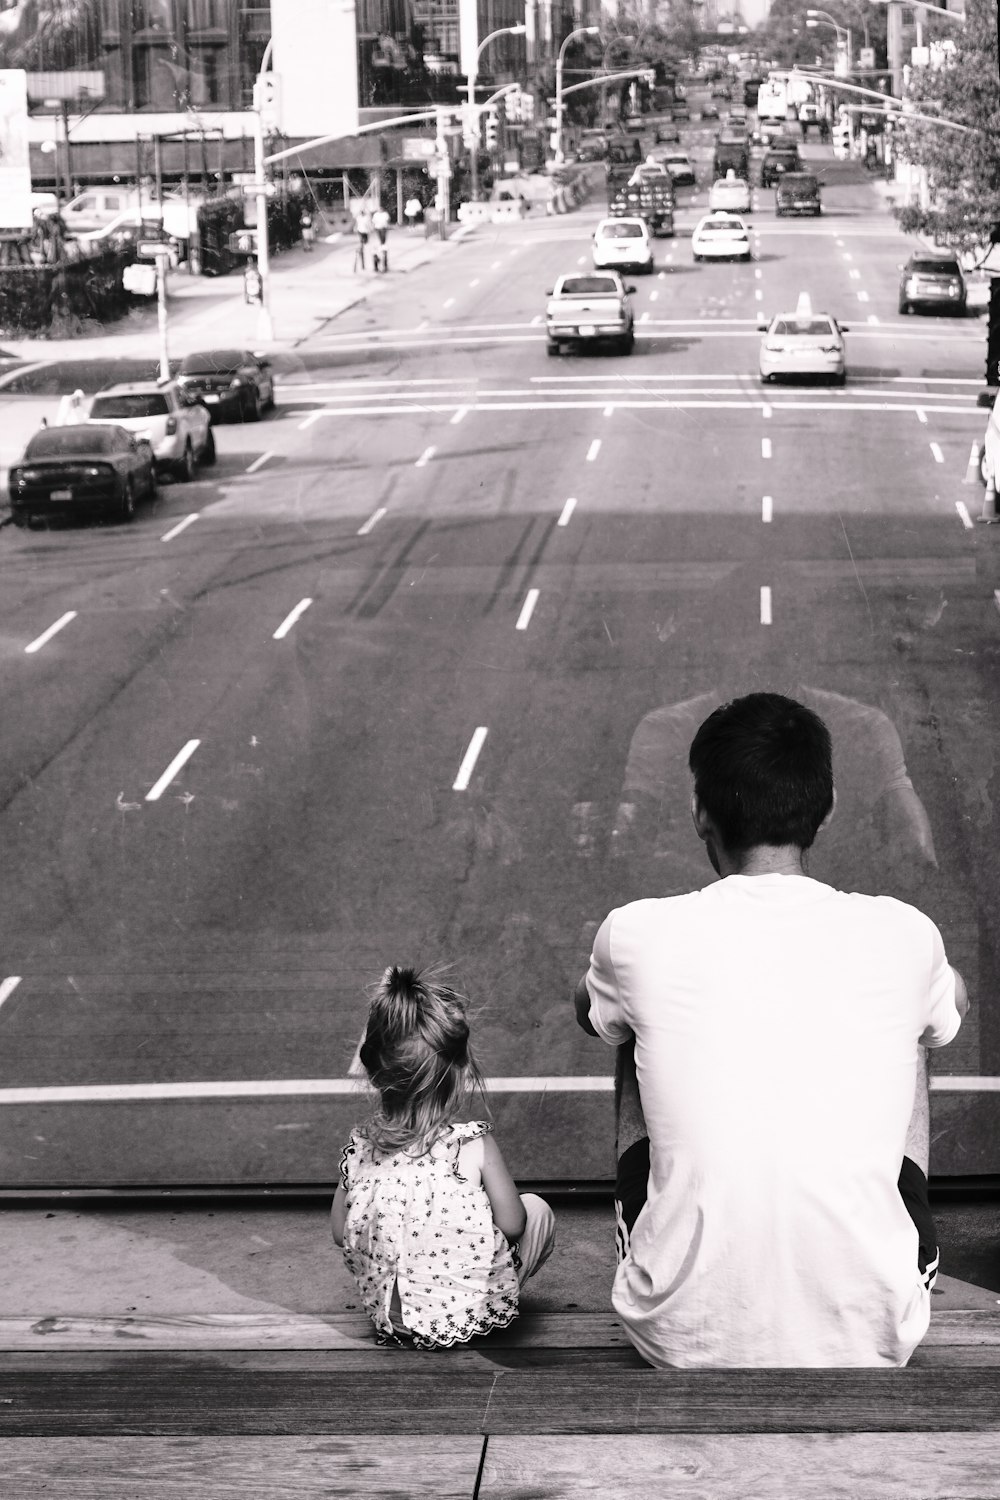 지나가는 자동차와 함께 도로를 마주보고 있는 계단에 앉아 있는 남자와 소녀의 회색조 사진